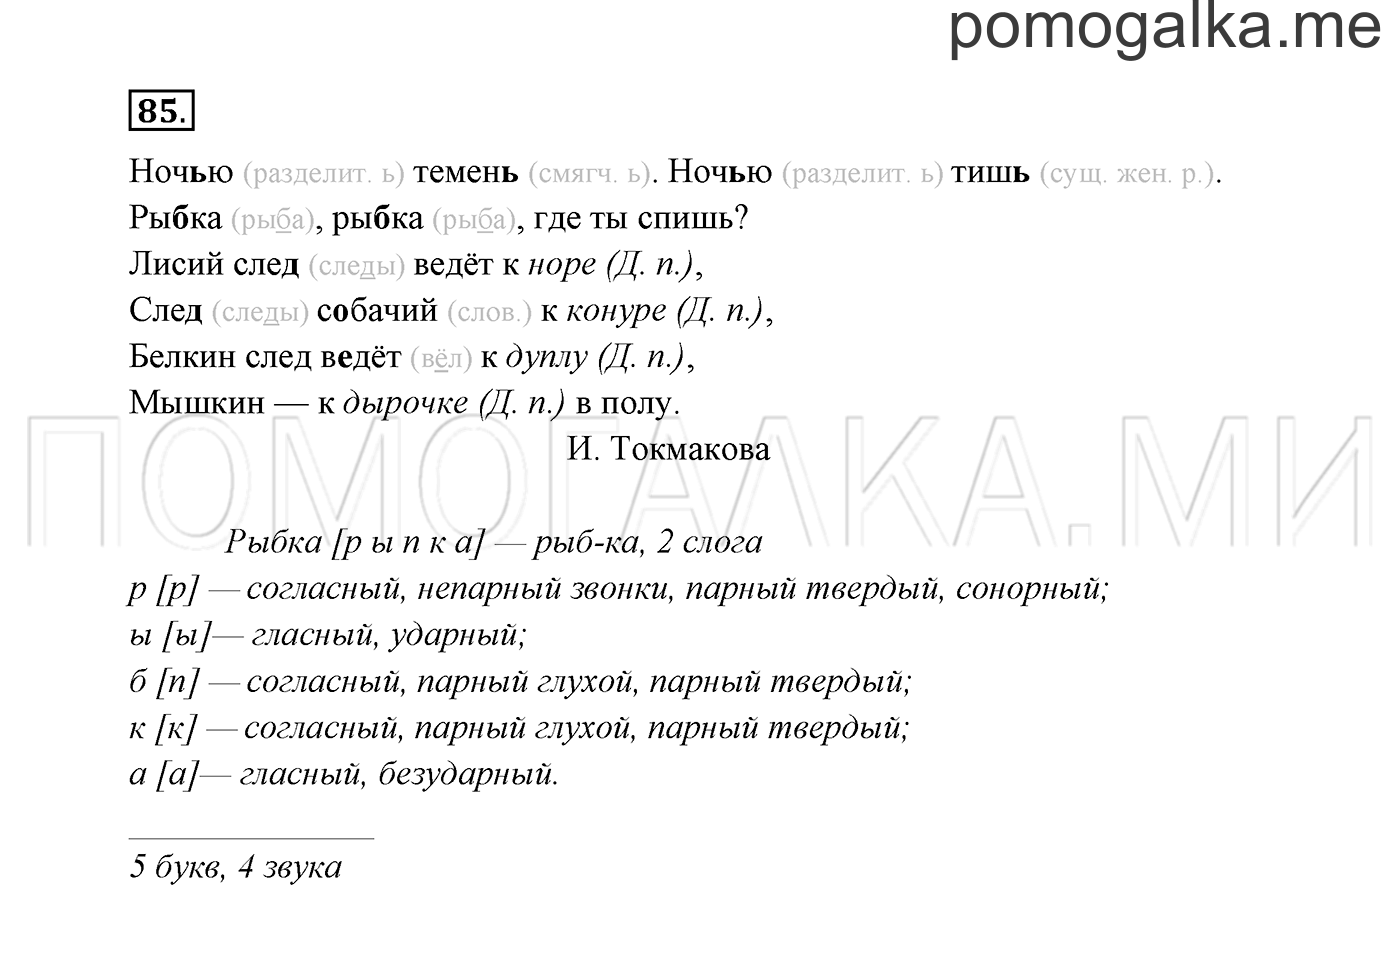 Русский язык стр 85 упр 149